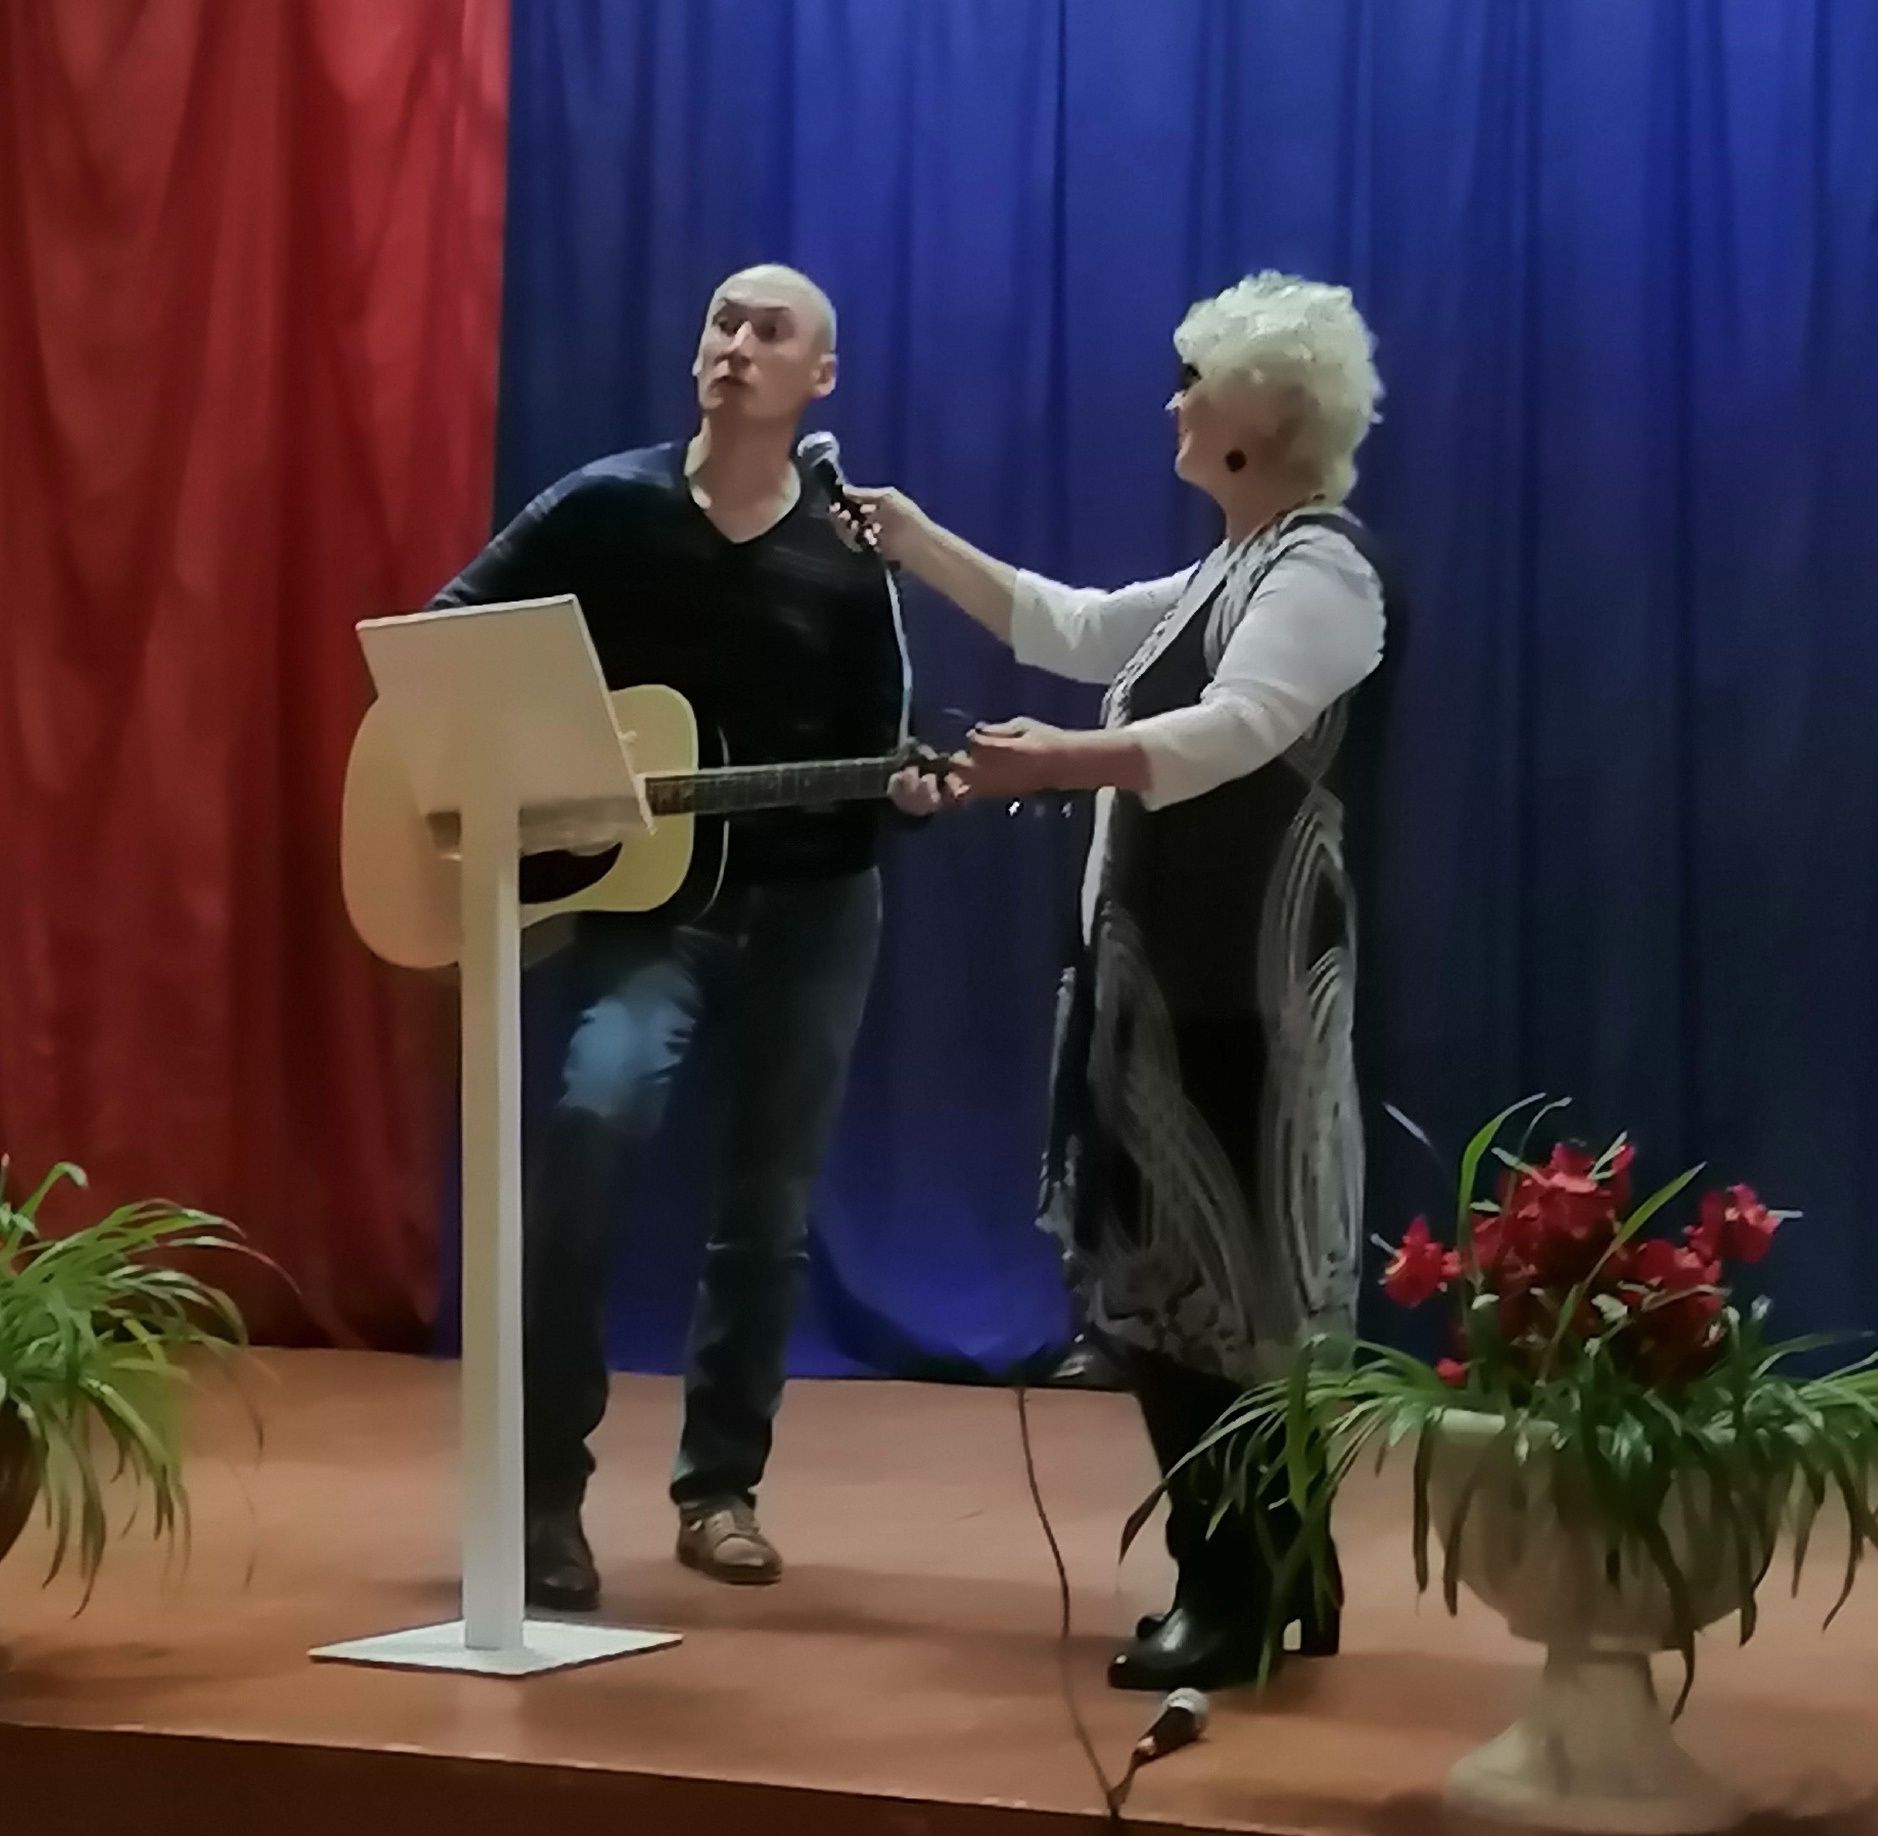 Пожилые артисты поселка Уруссу выступили в Чекане